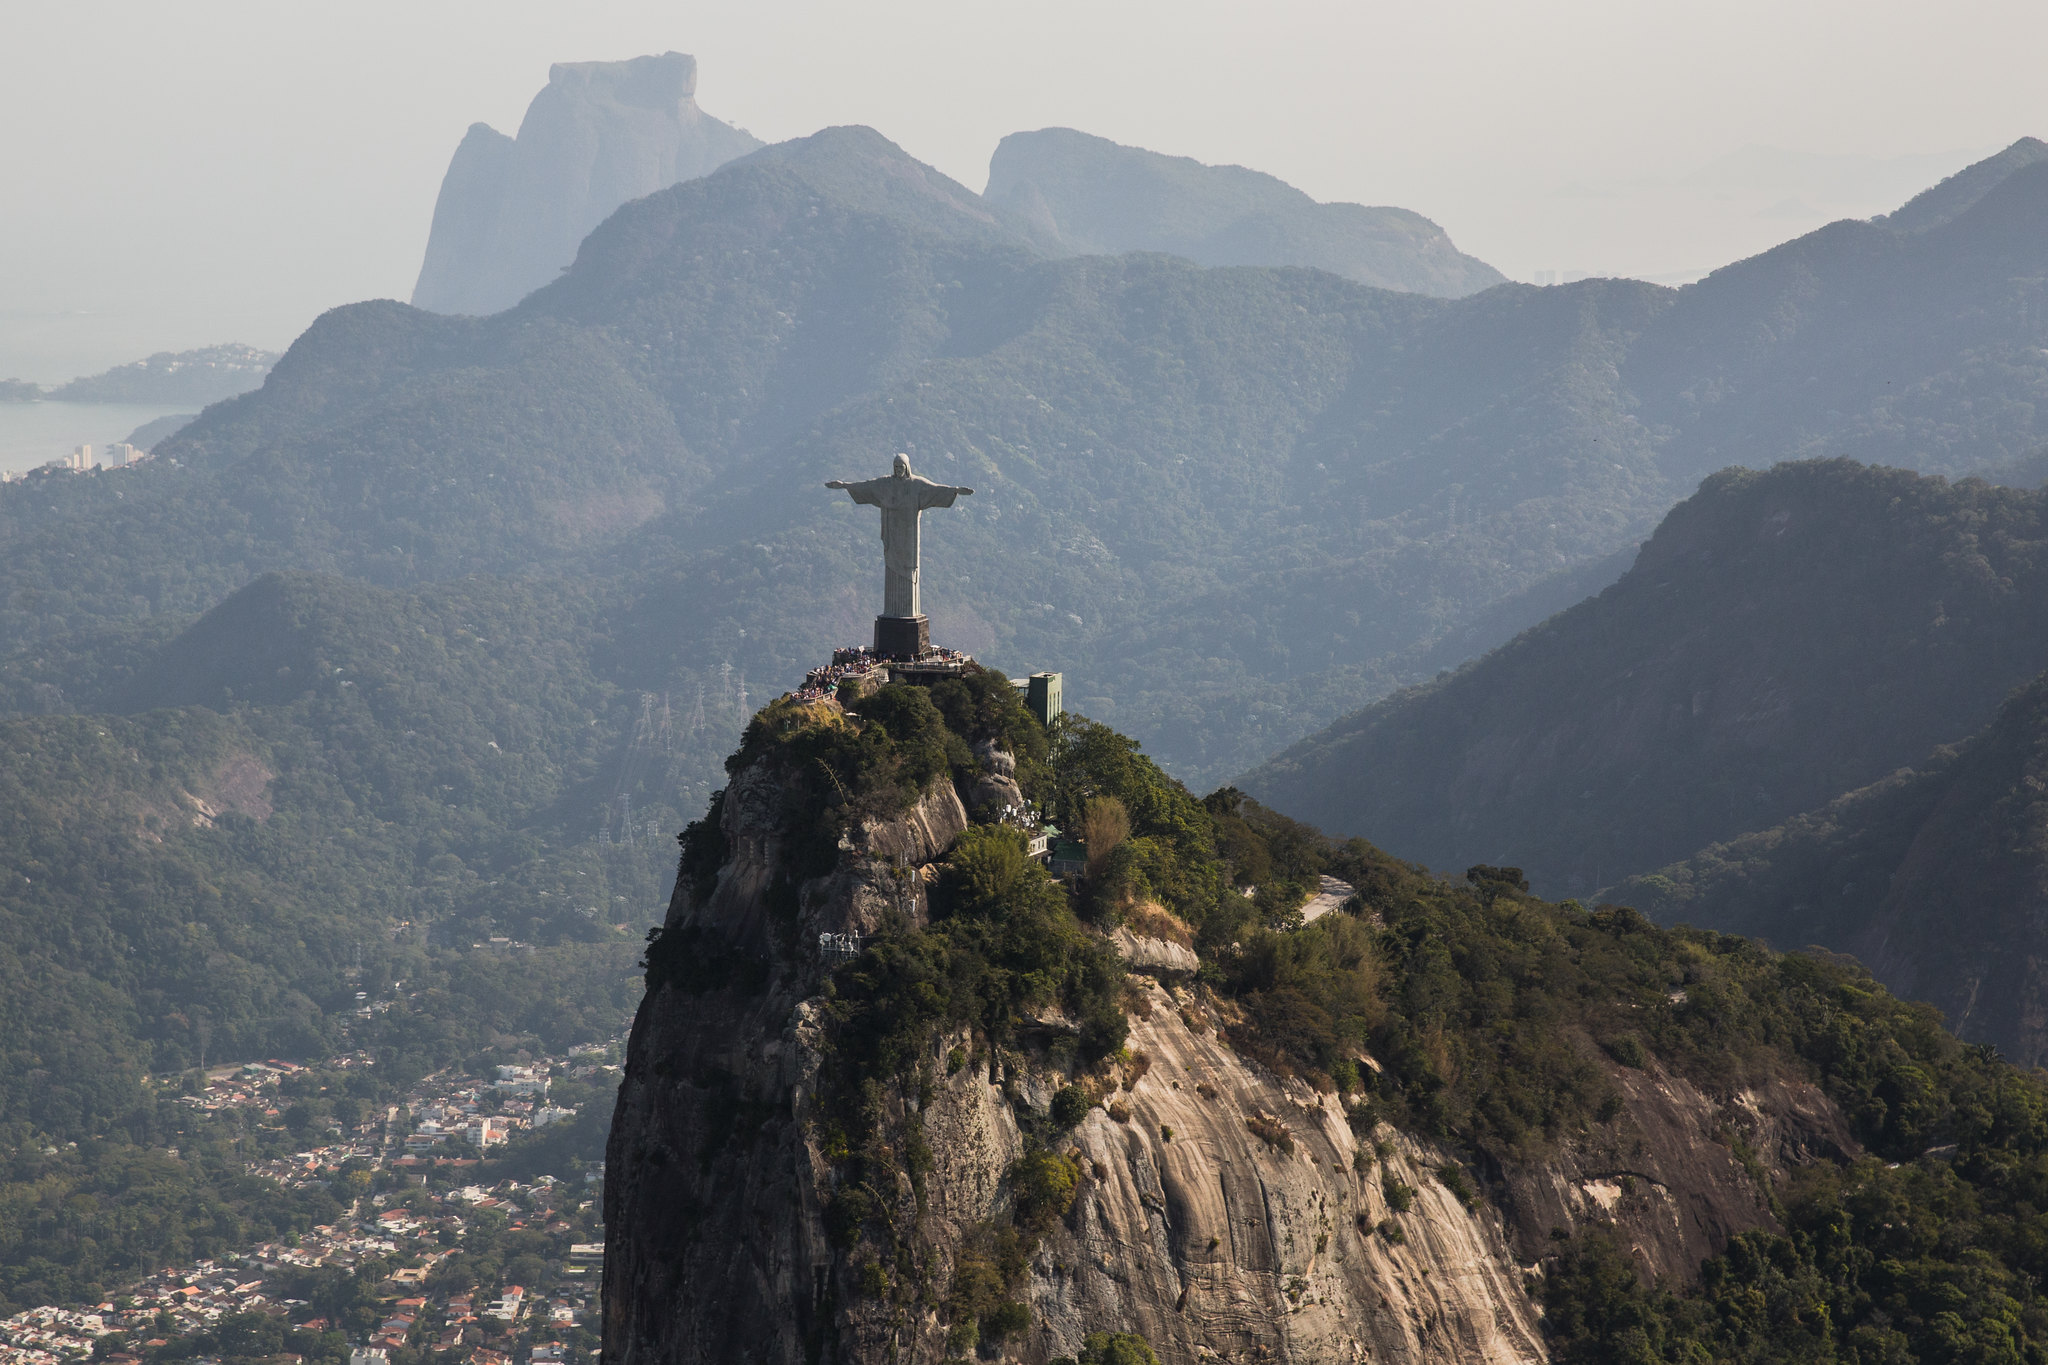 Atrações Turísticas do Rio de Janeiro